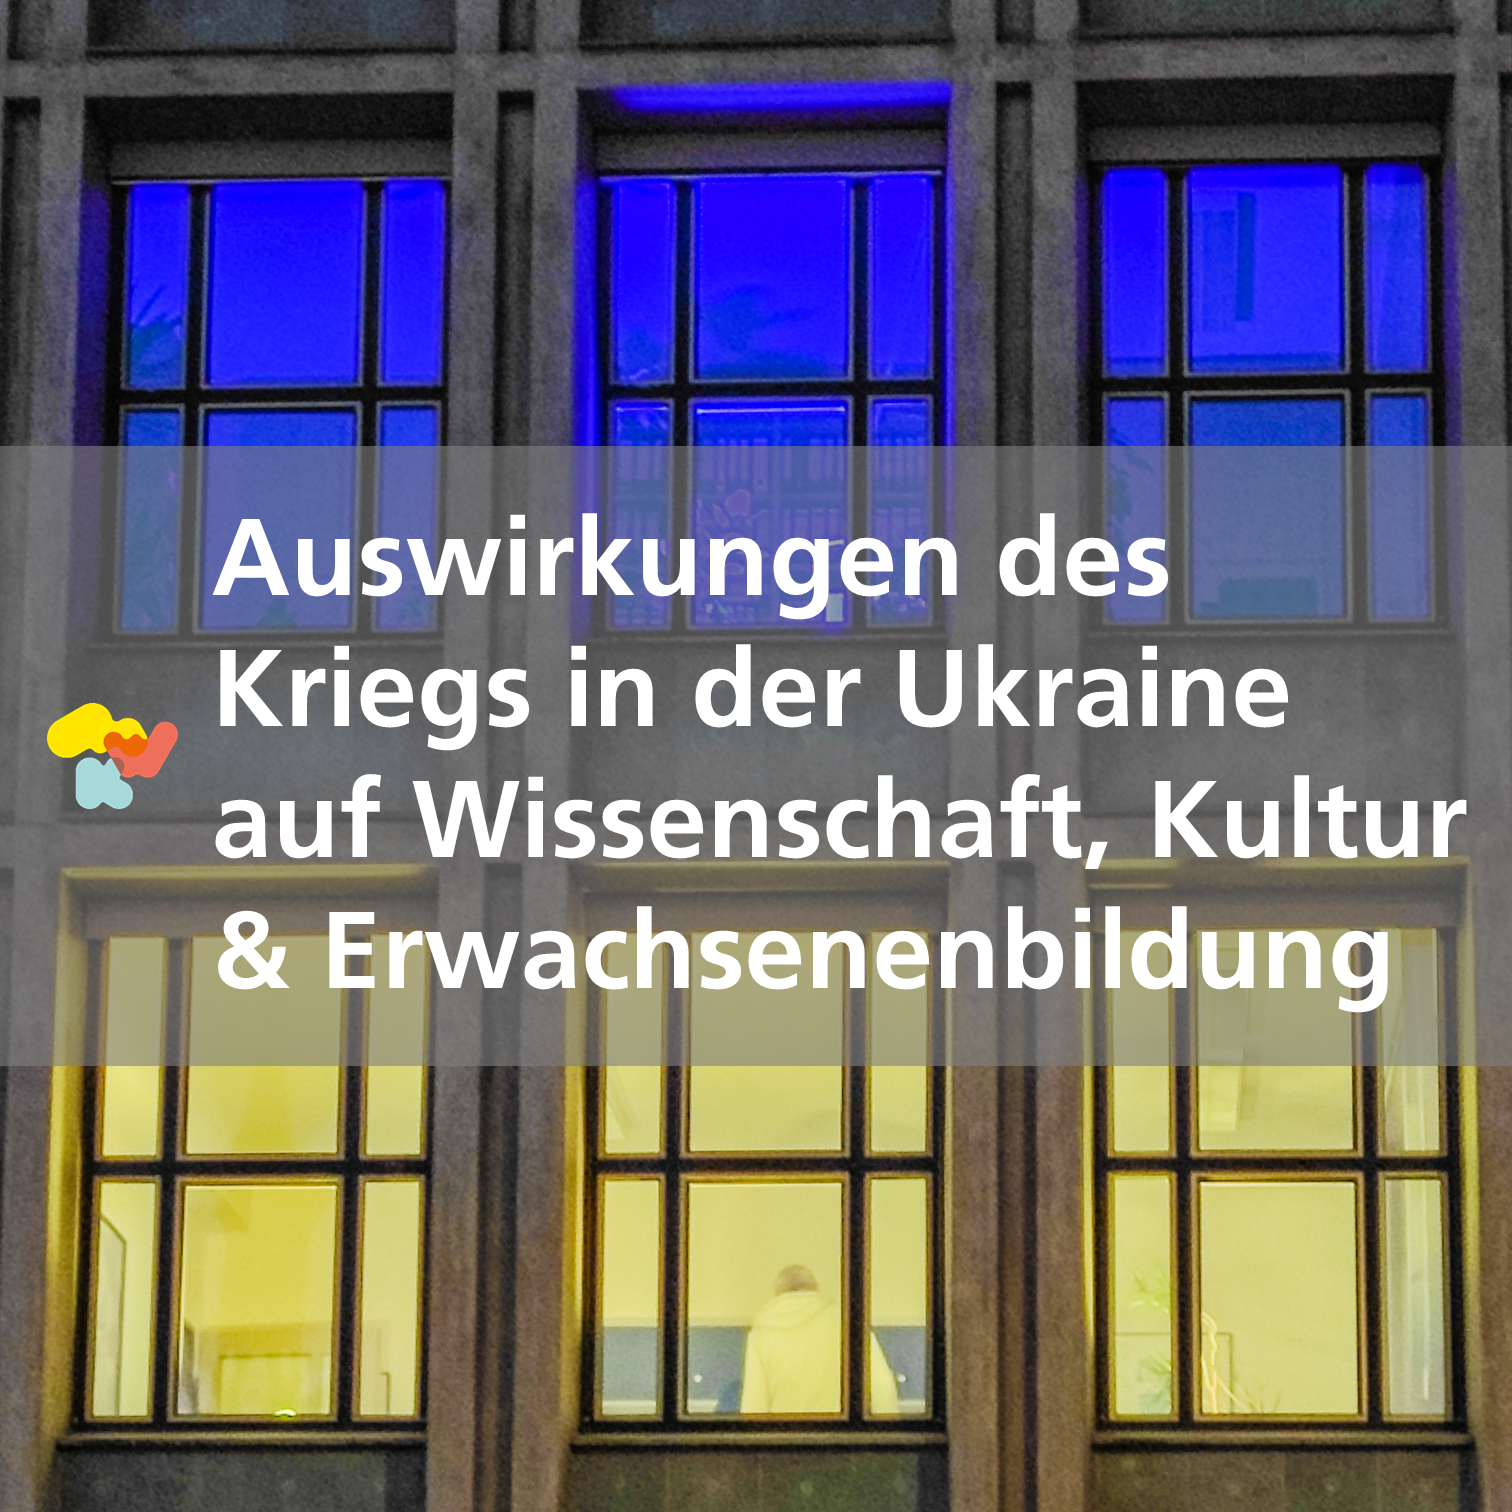 Schmuckbild: Gebäude des MWK in die Farben der ukrainischen Flagge getaucht